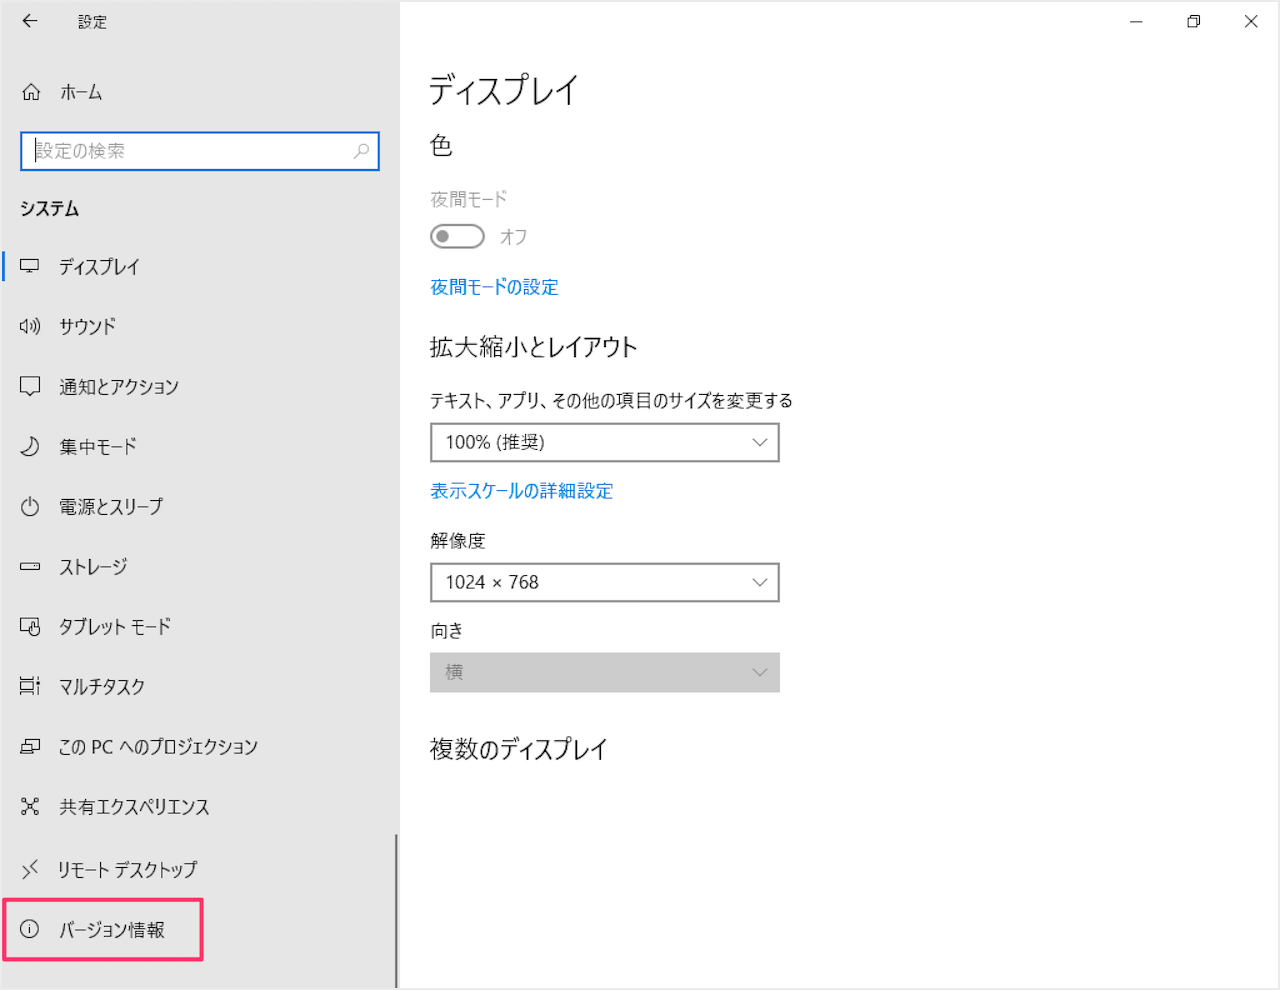 Windows10 システムの基本情報を確認 表示 Pc設定のカルマ